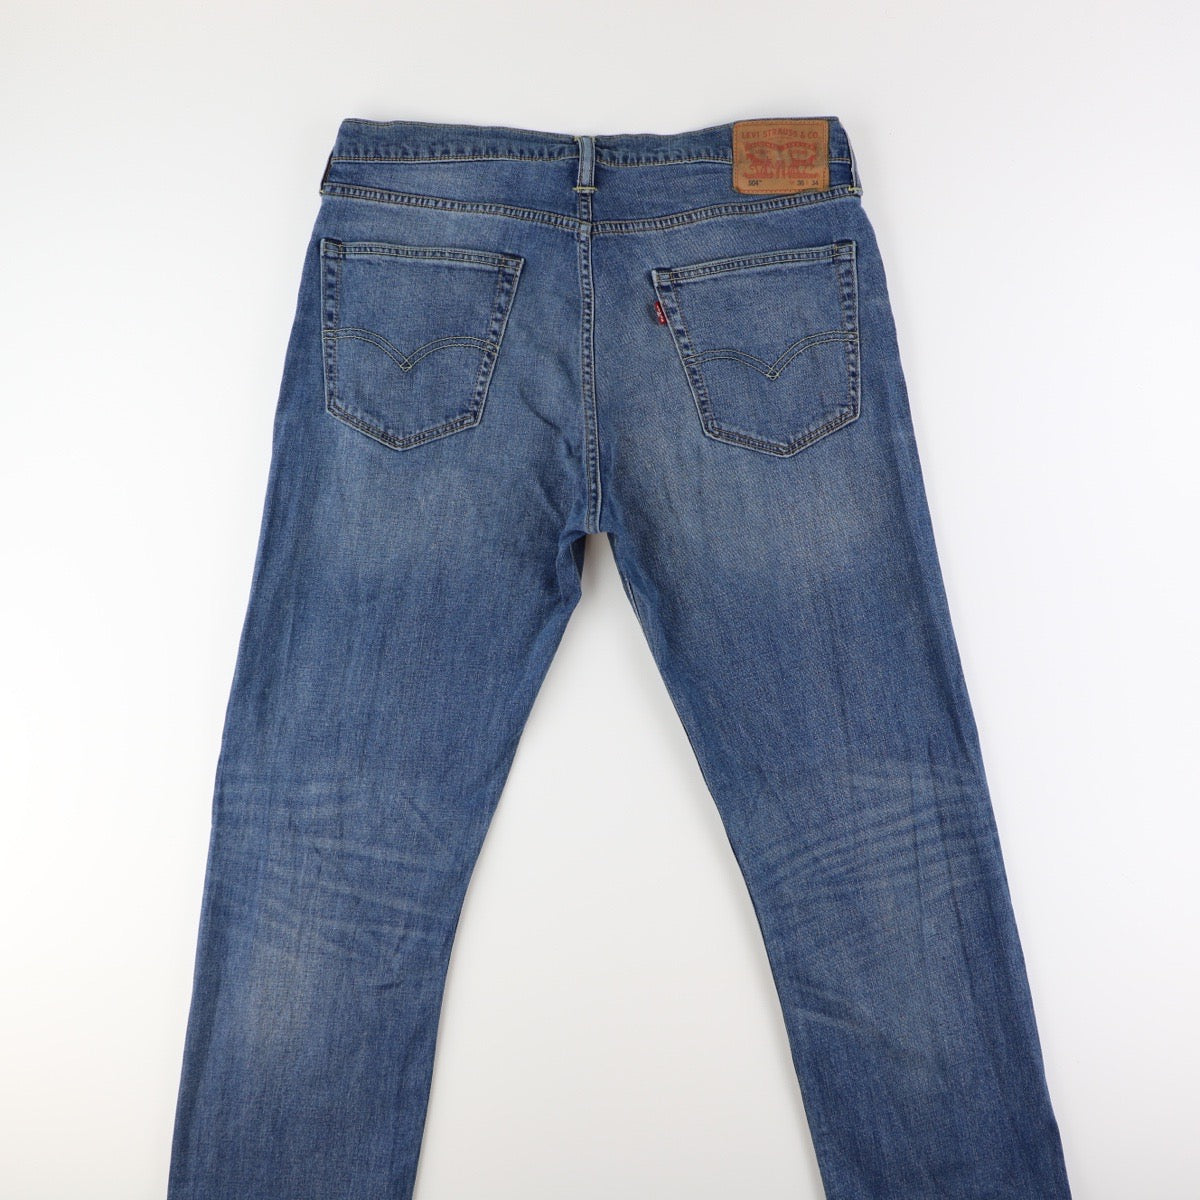 Levis 504 Jeans  (36)